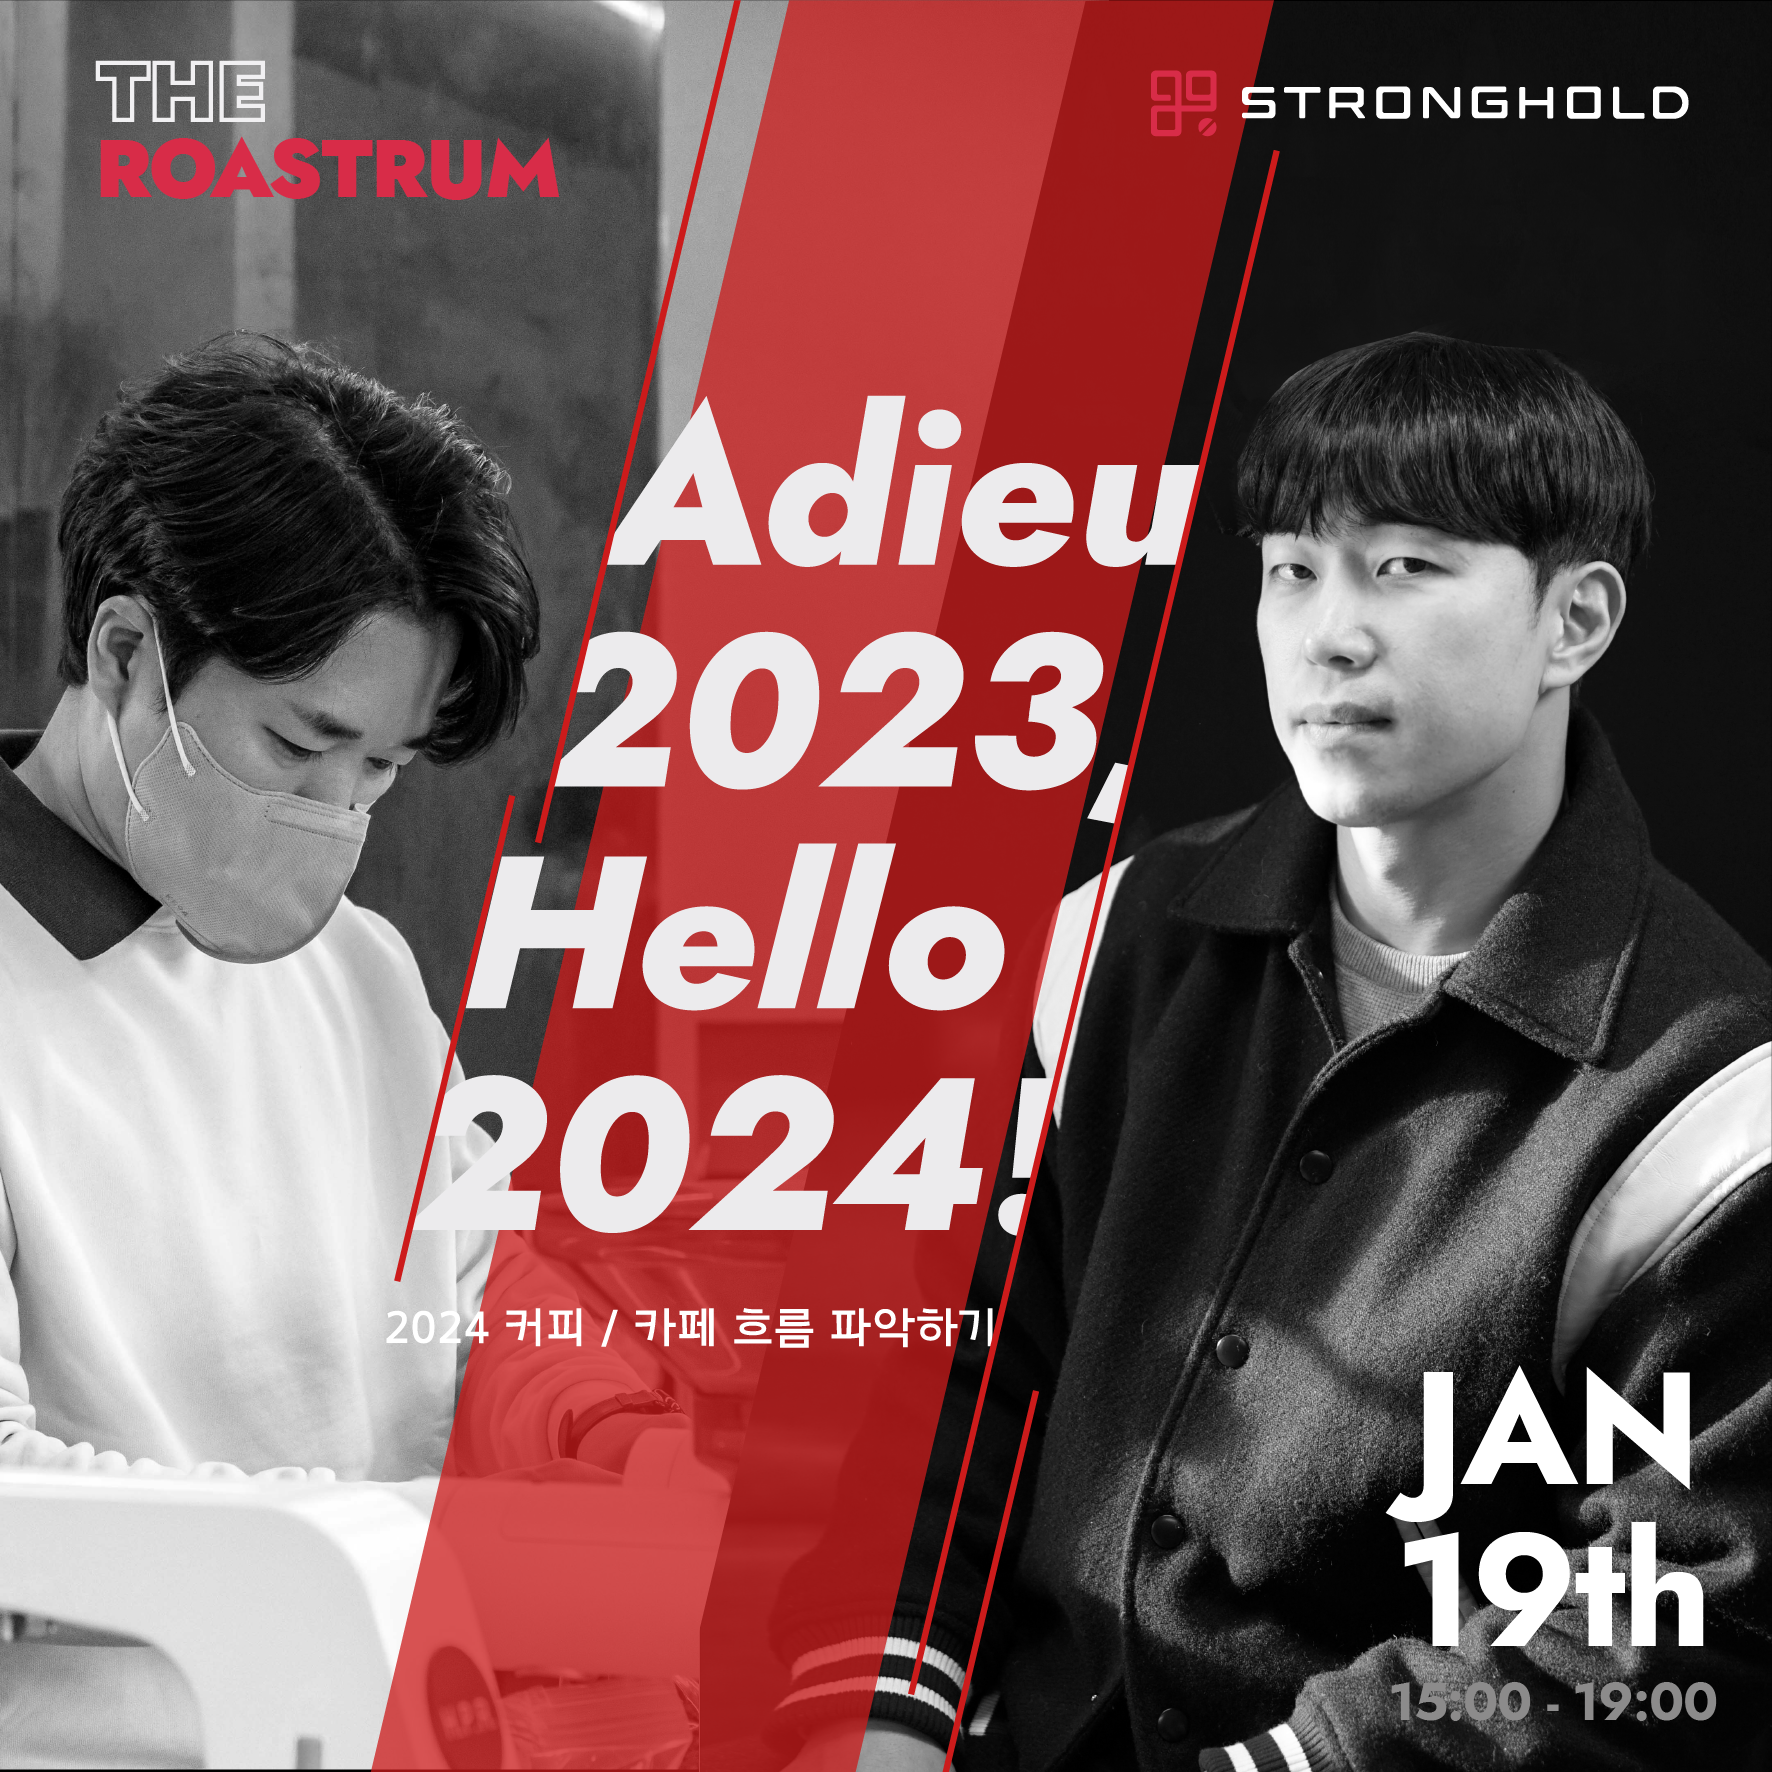 (국내)스트롱홀드, Adieu 2023, Hello 2024 세미나 개최_이미지1.png